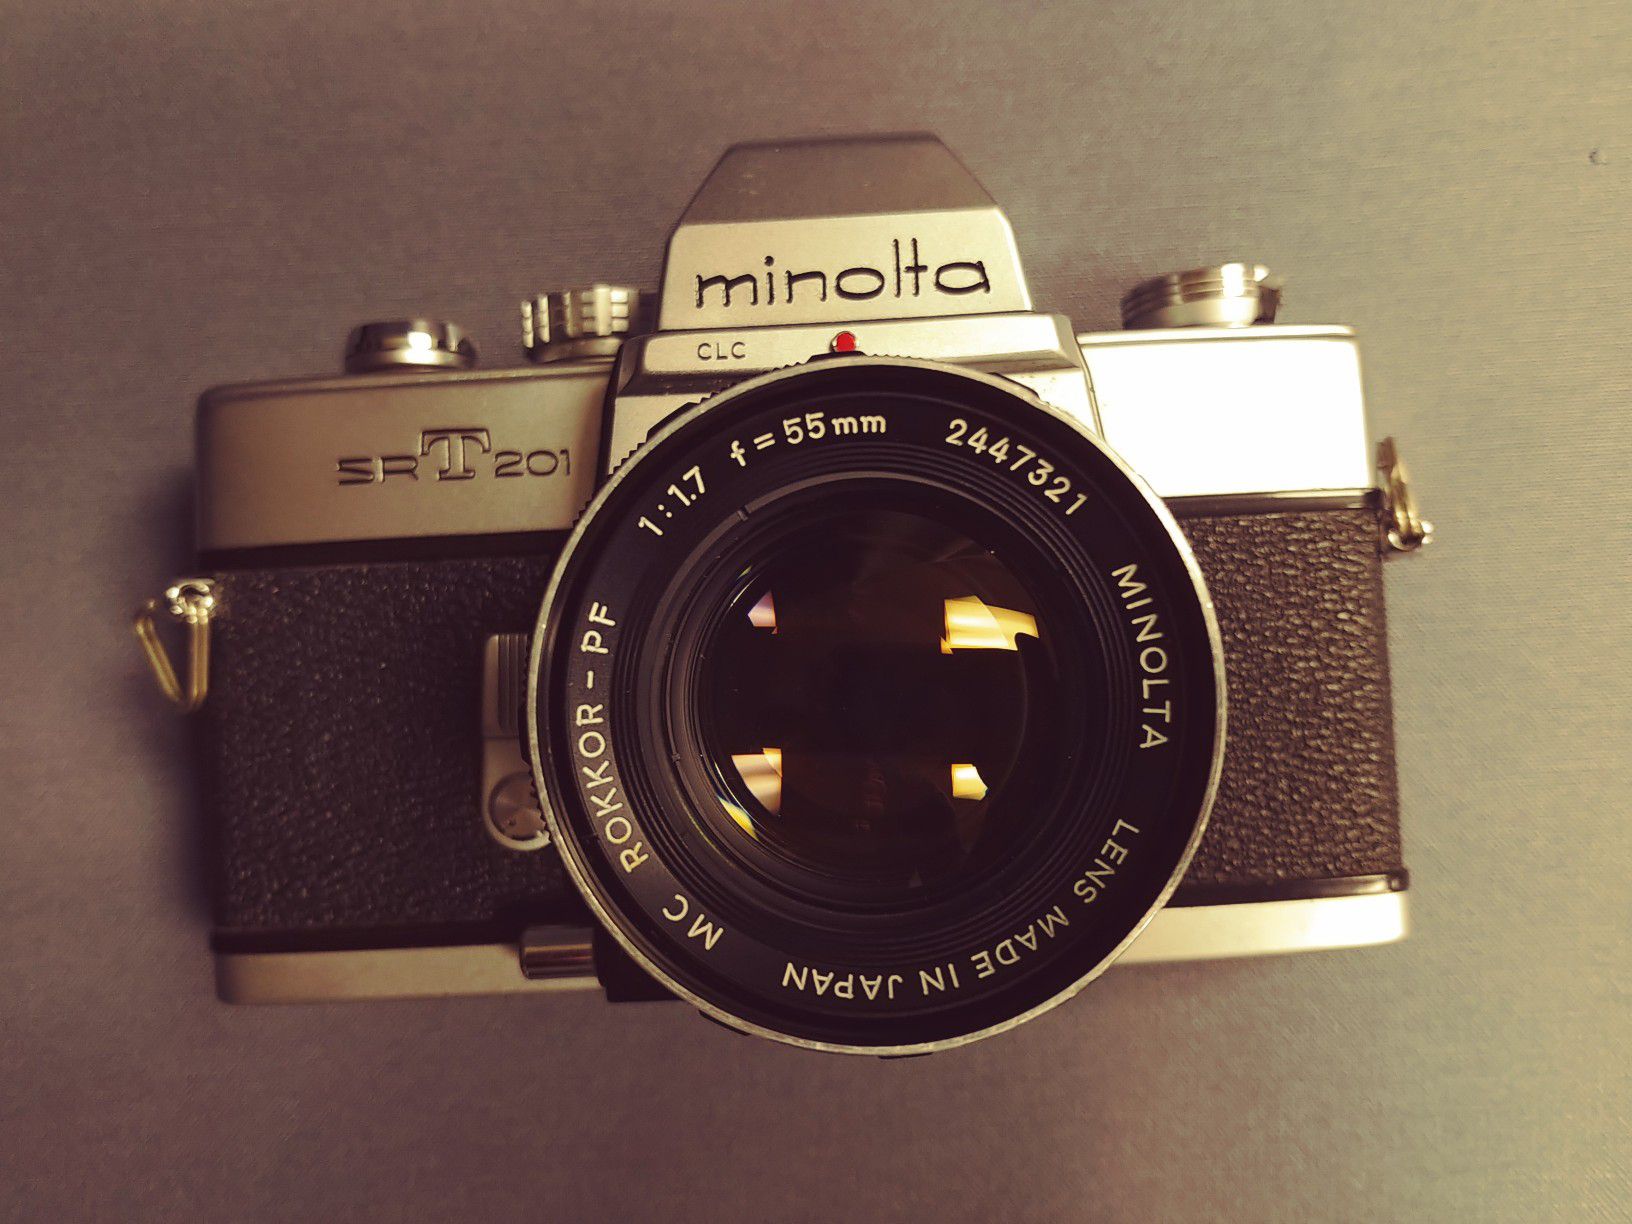 MINOLTA SRT 201 Film SLR Camera with MINOLTA ROKKOR-PF 55mm F1.7 Lens